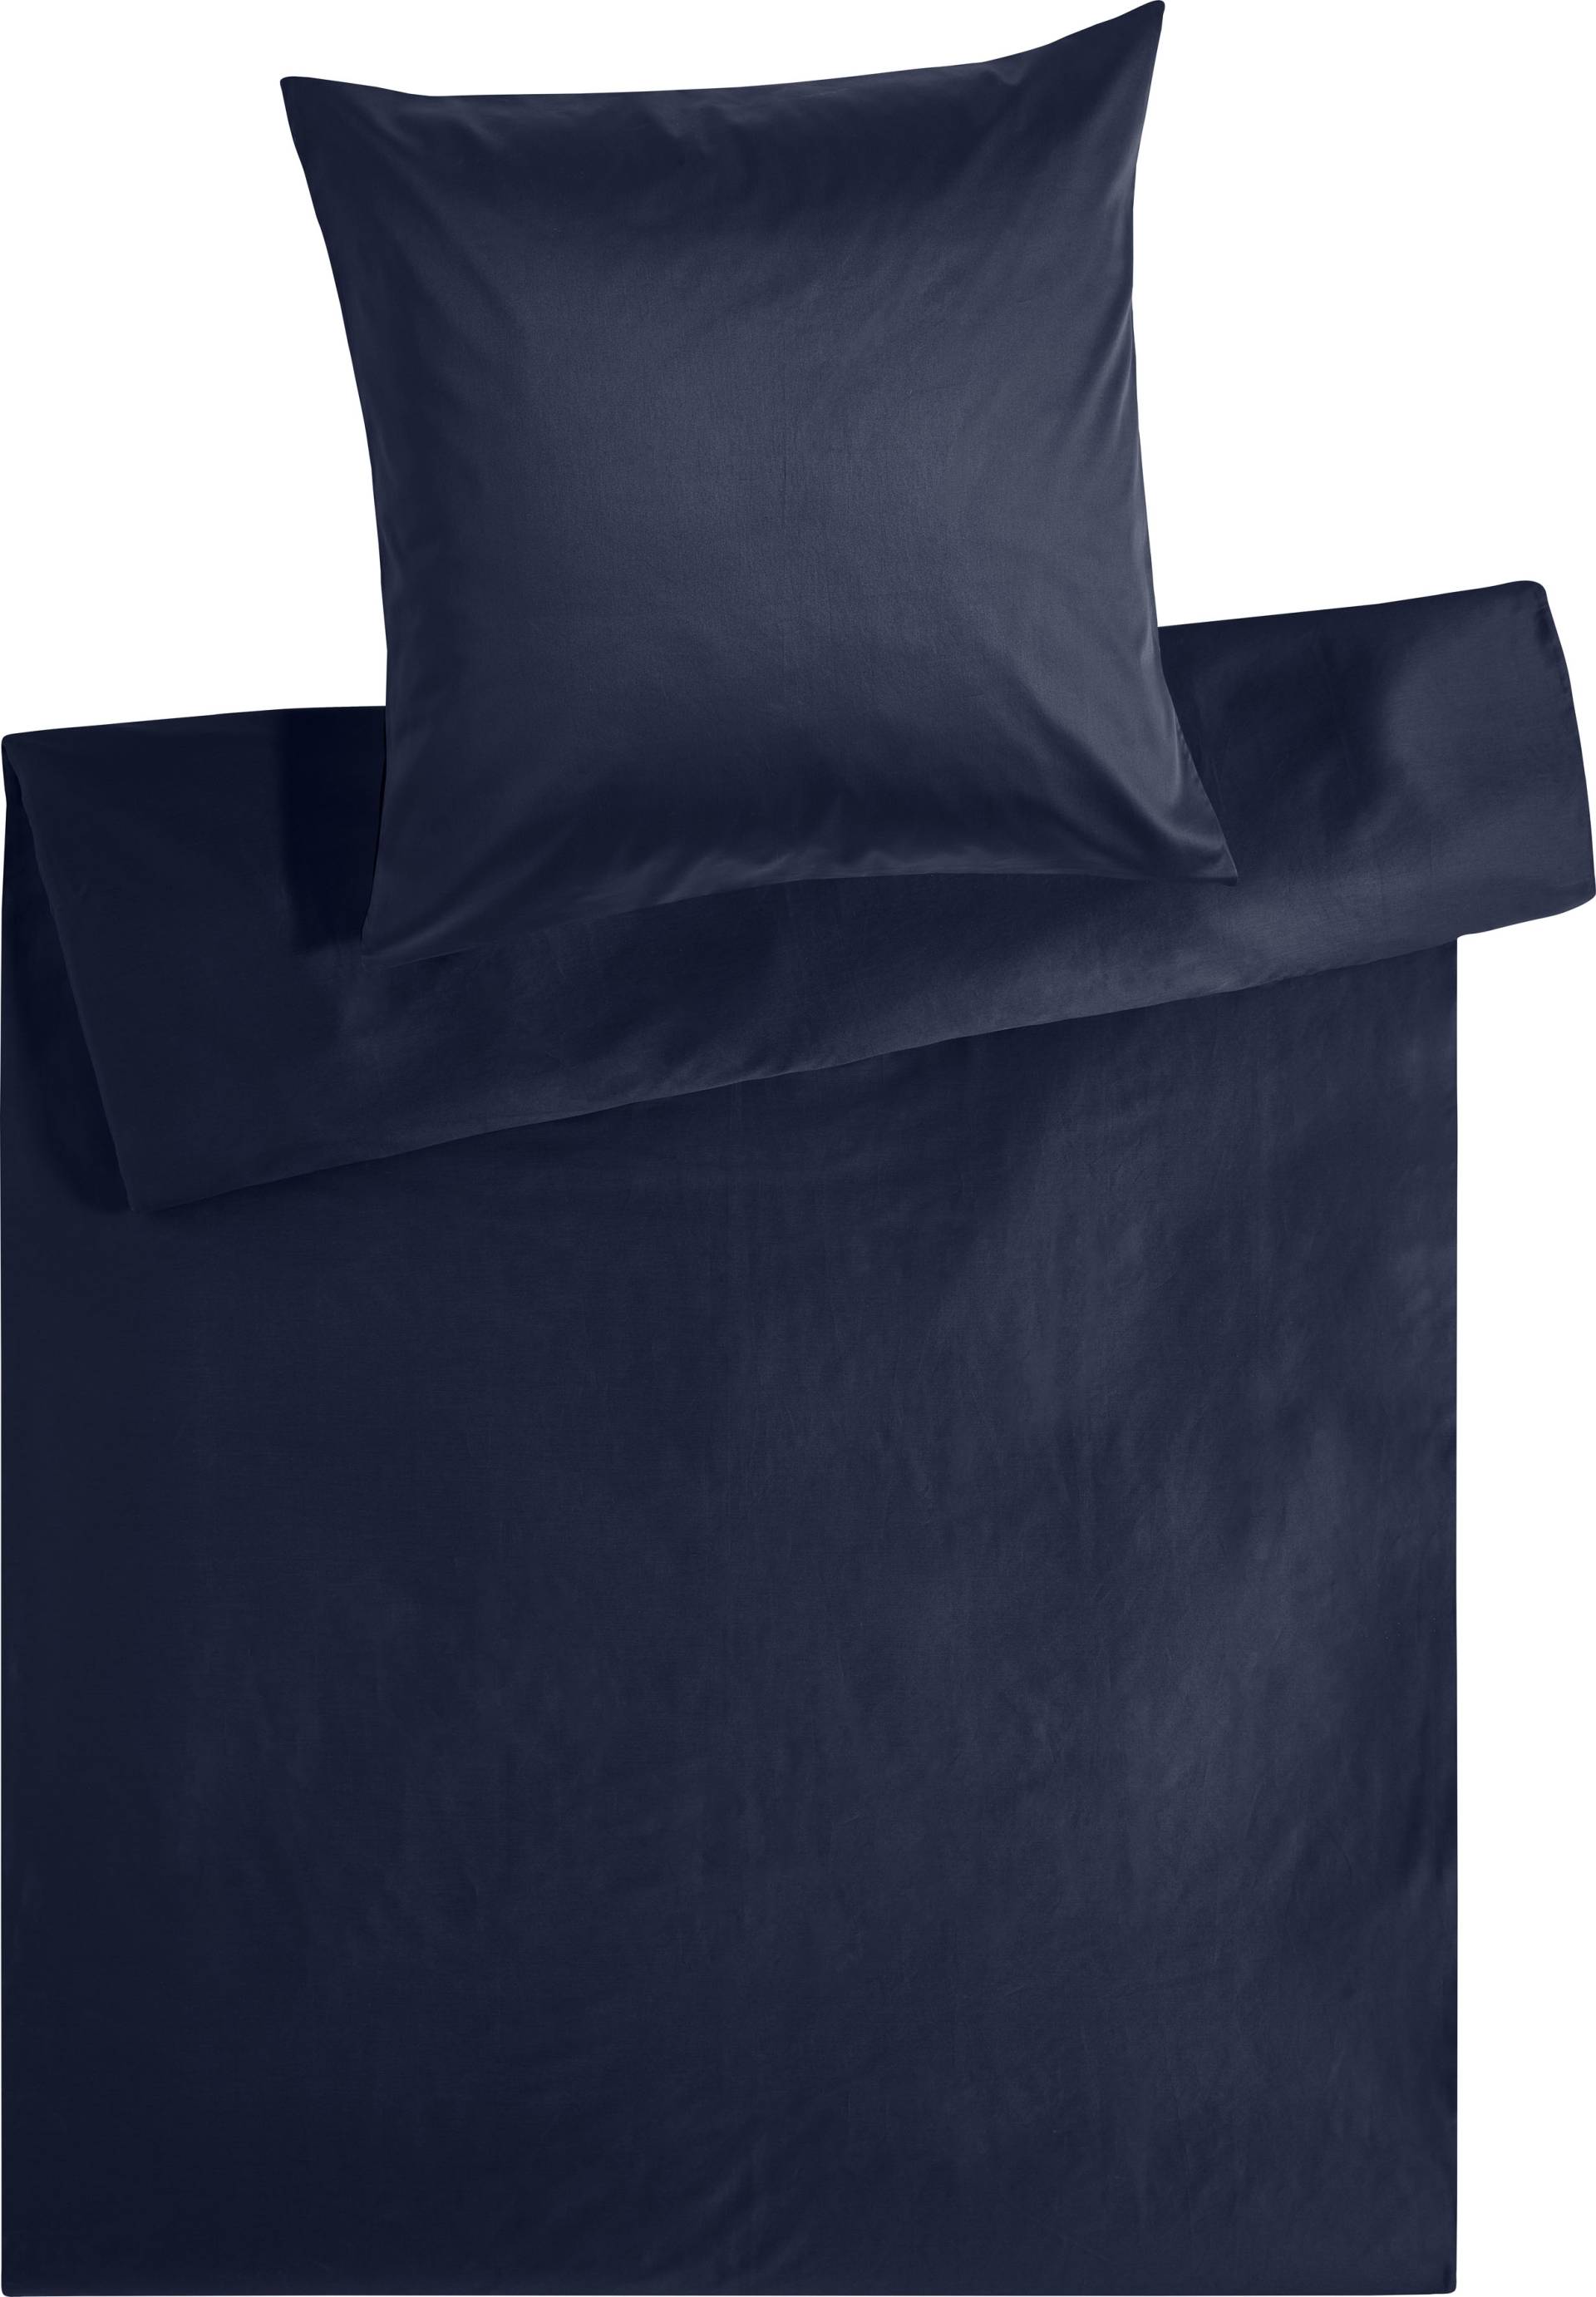 Kneer Bettwäsche »Edel-Satin Uni in 135x200, 155x220 oder 200x200 cm«, (2 tlg.), Bettwäsche aus Baumwolle in Satin-Qualität, unifarbene Bettwäsche von Kneer